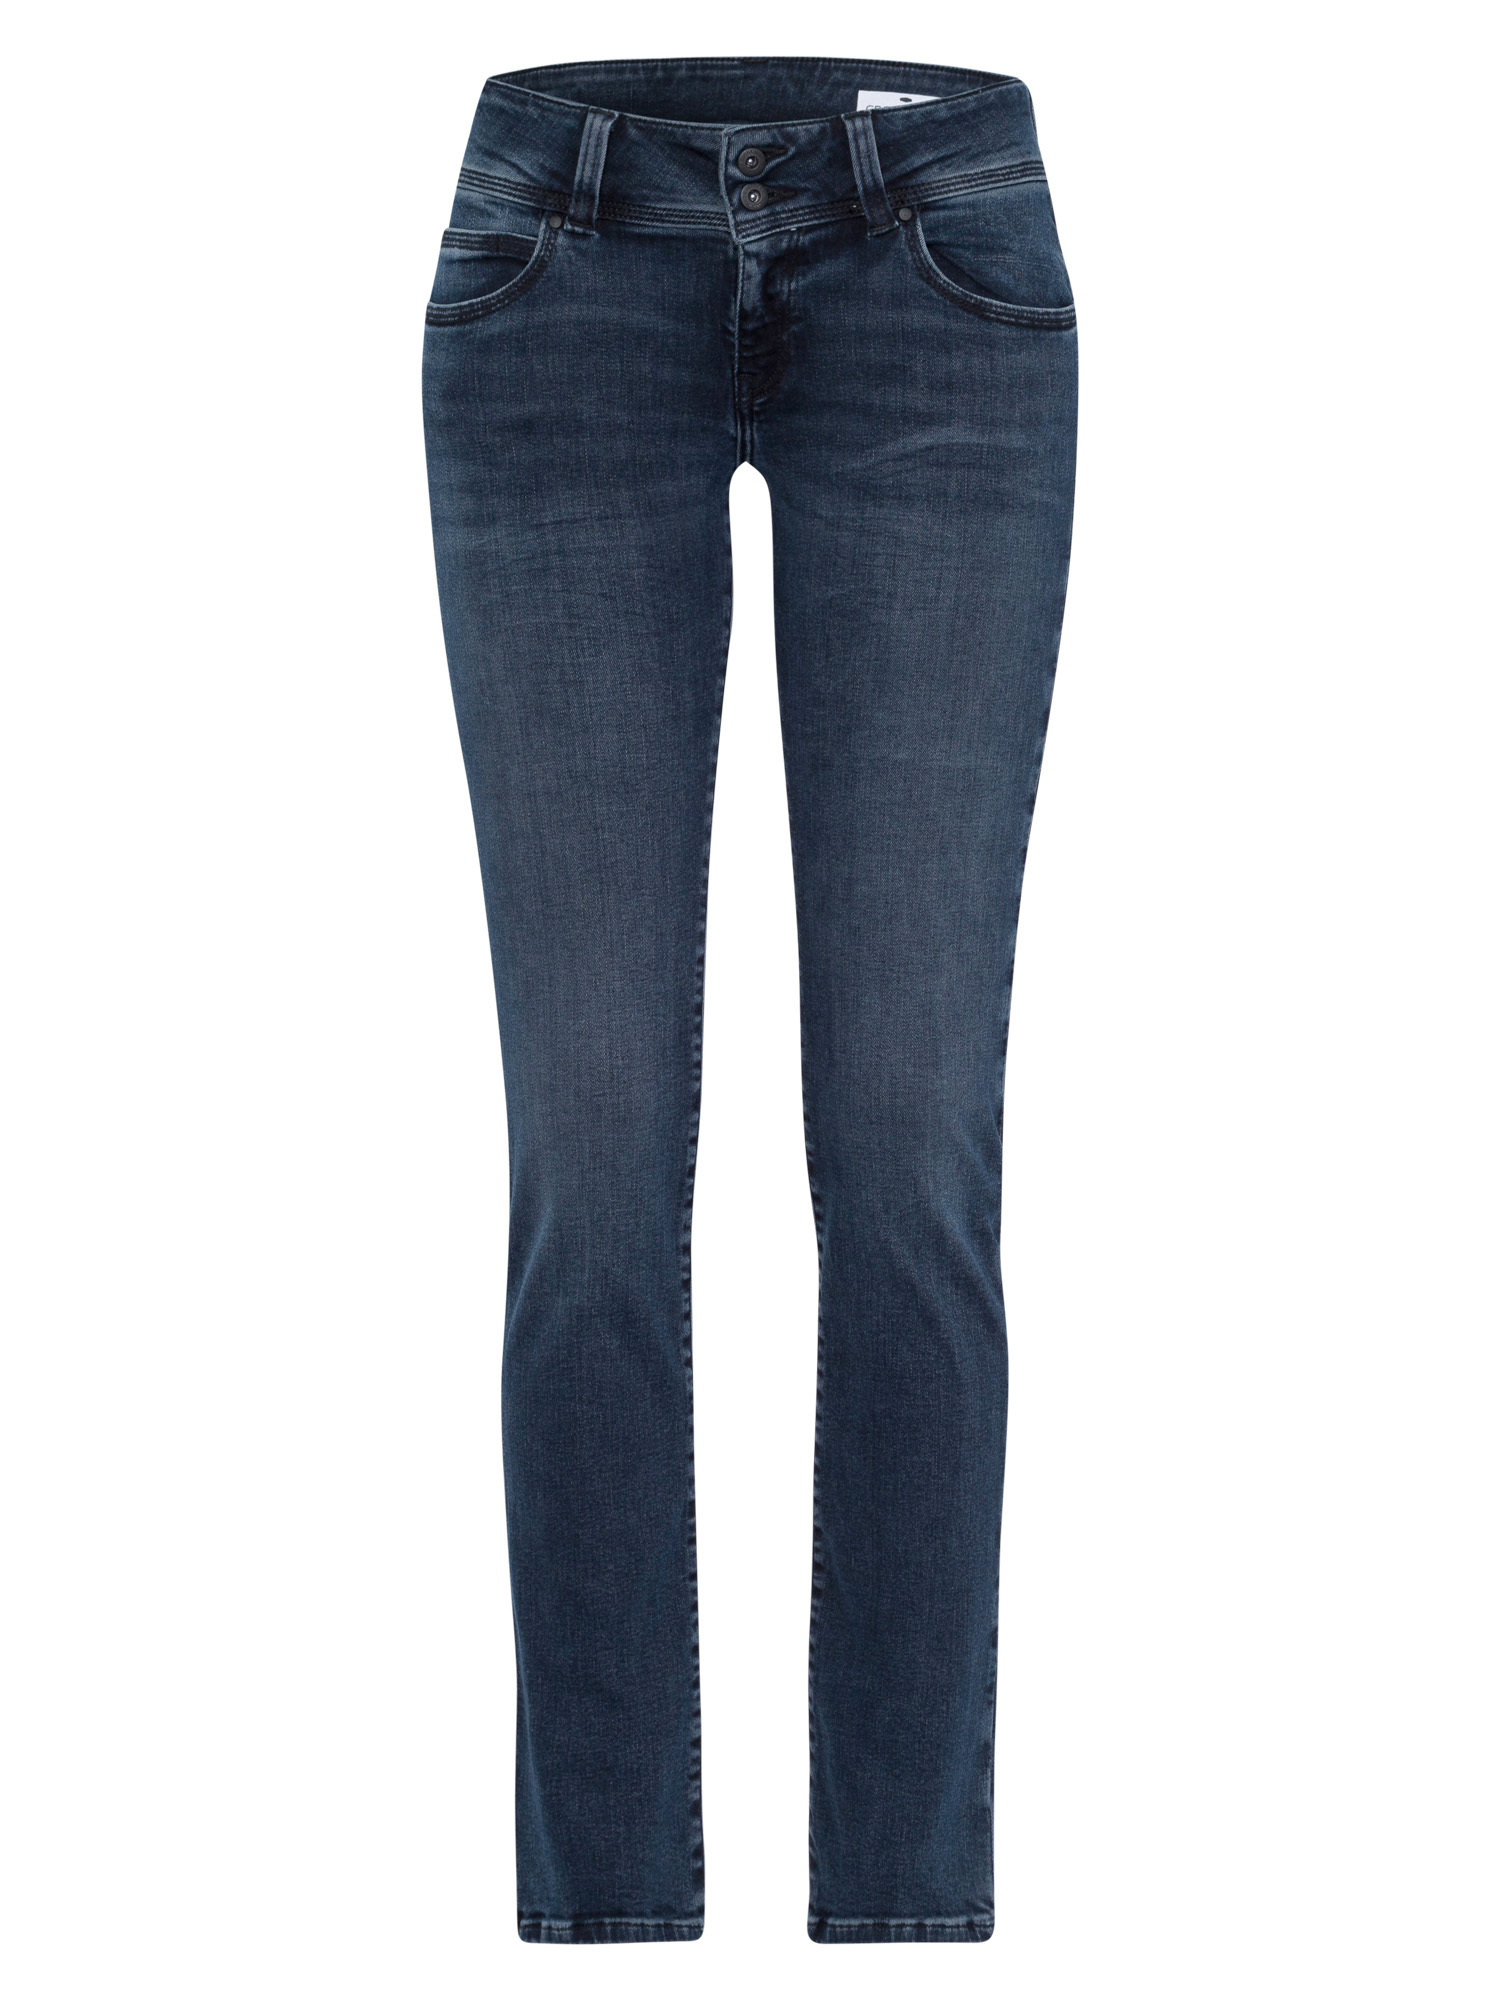 CROSS JEANS LOIE blue black P422-012 | Loie | Cross Jeans | Damen Jeans ...